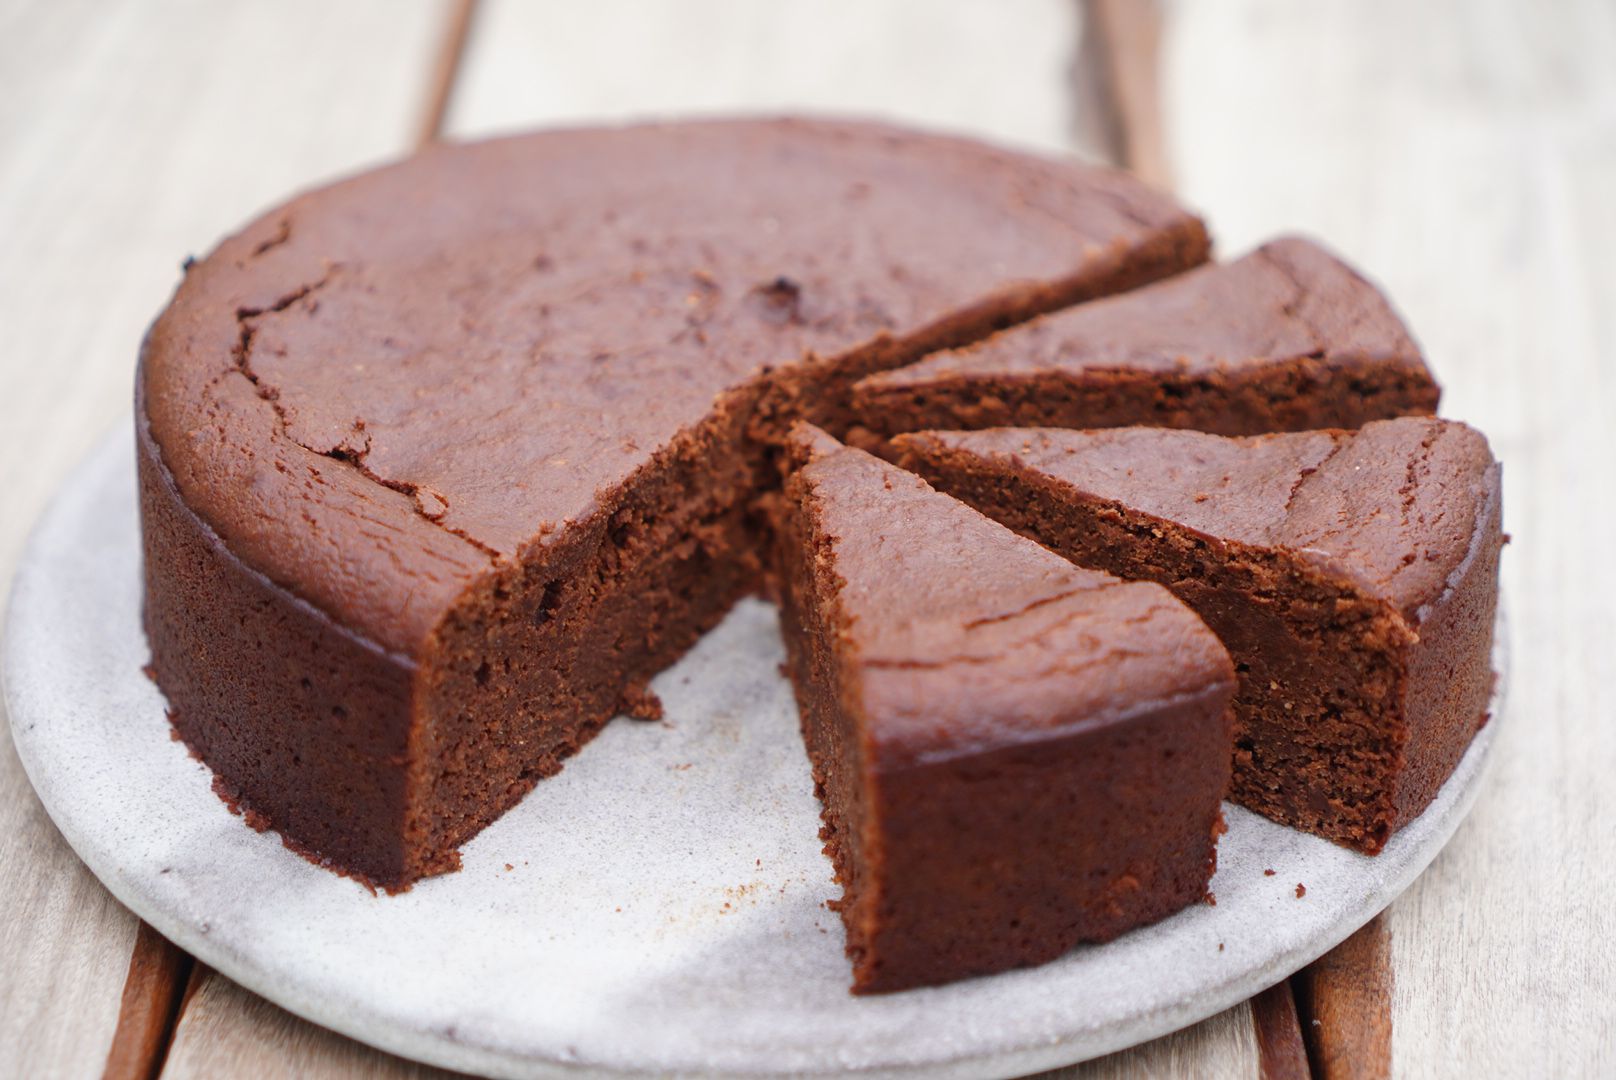 Petits gâteaux moelleux au chocolat noir, sans gluten - Youmiam